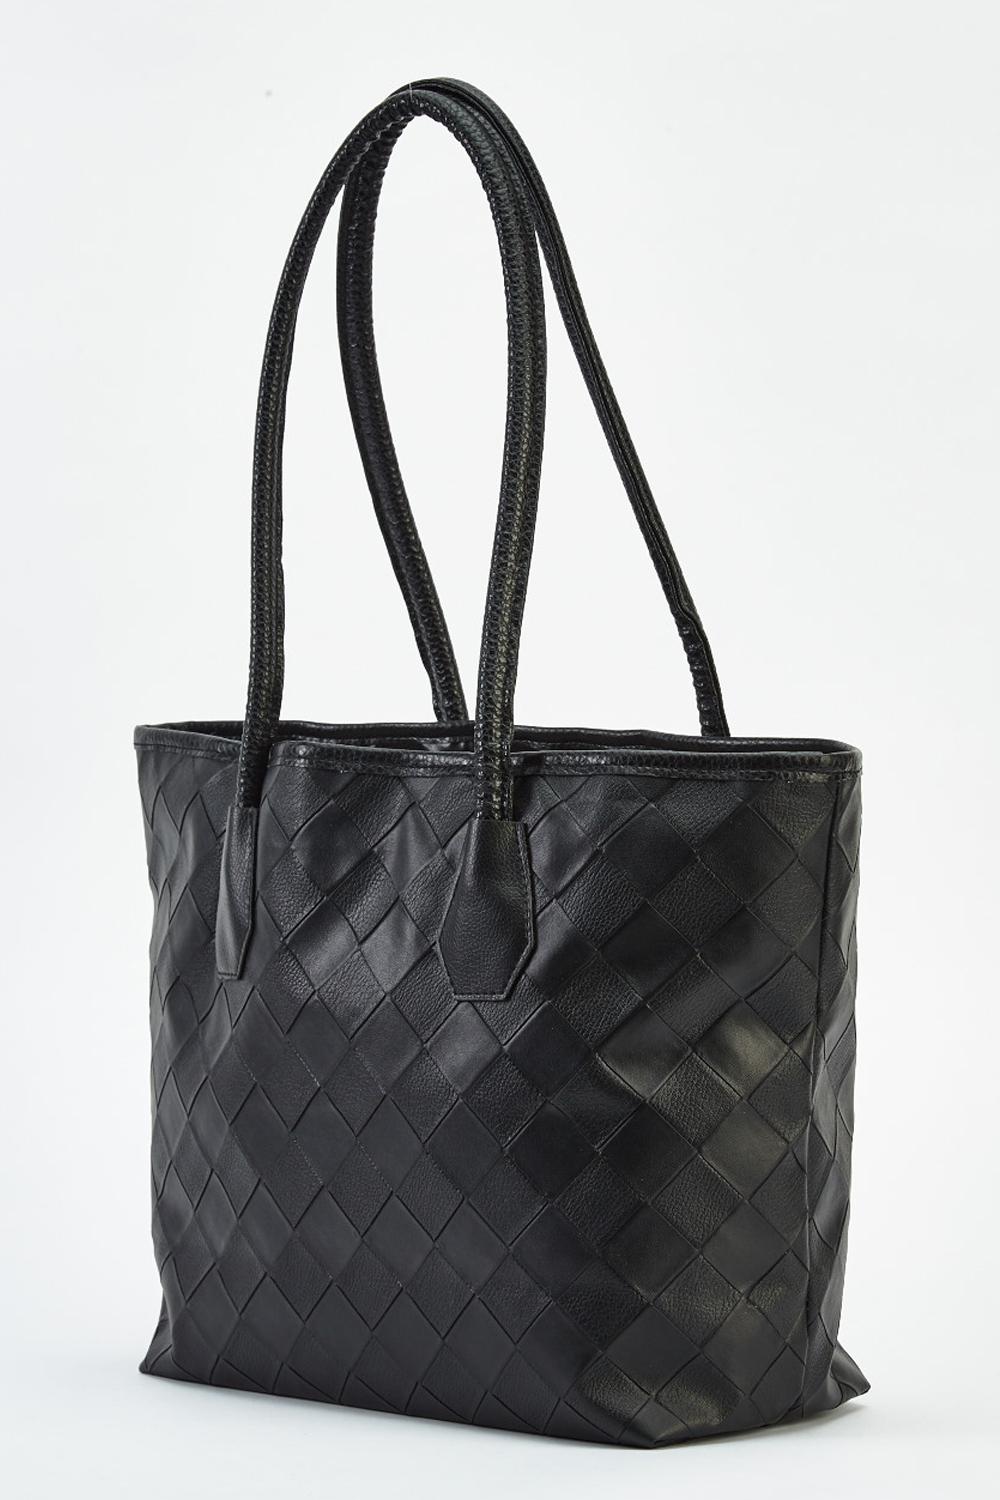 Basket Weave Faux Leather Handbag - Just $7